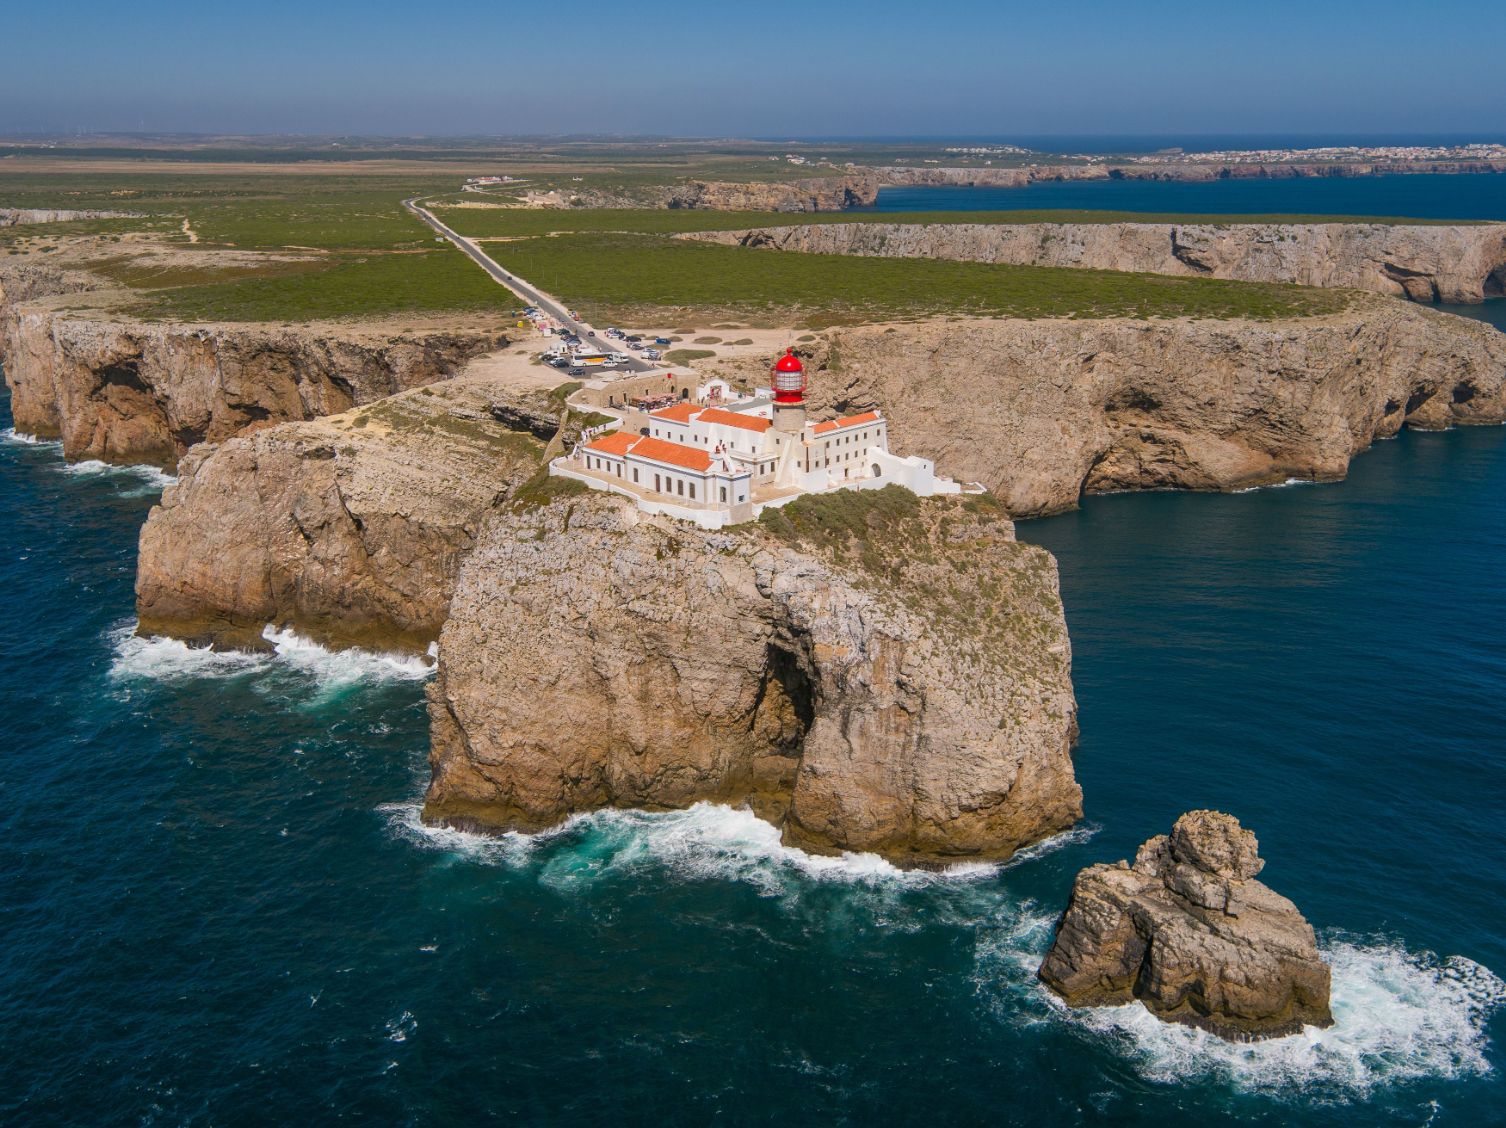 Agentes turísticos do Reino Unido empenhados na promoção do Algarve enquanto destino